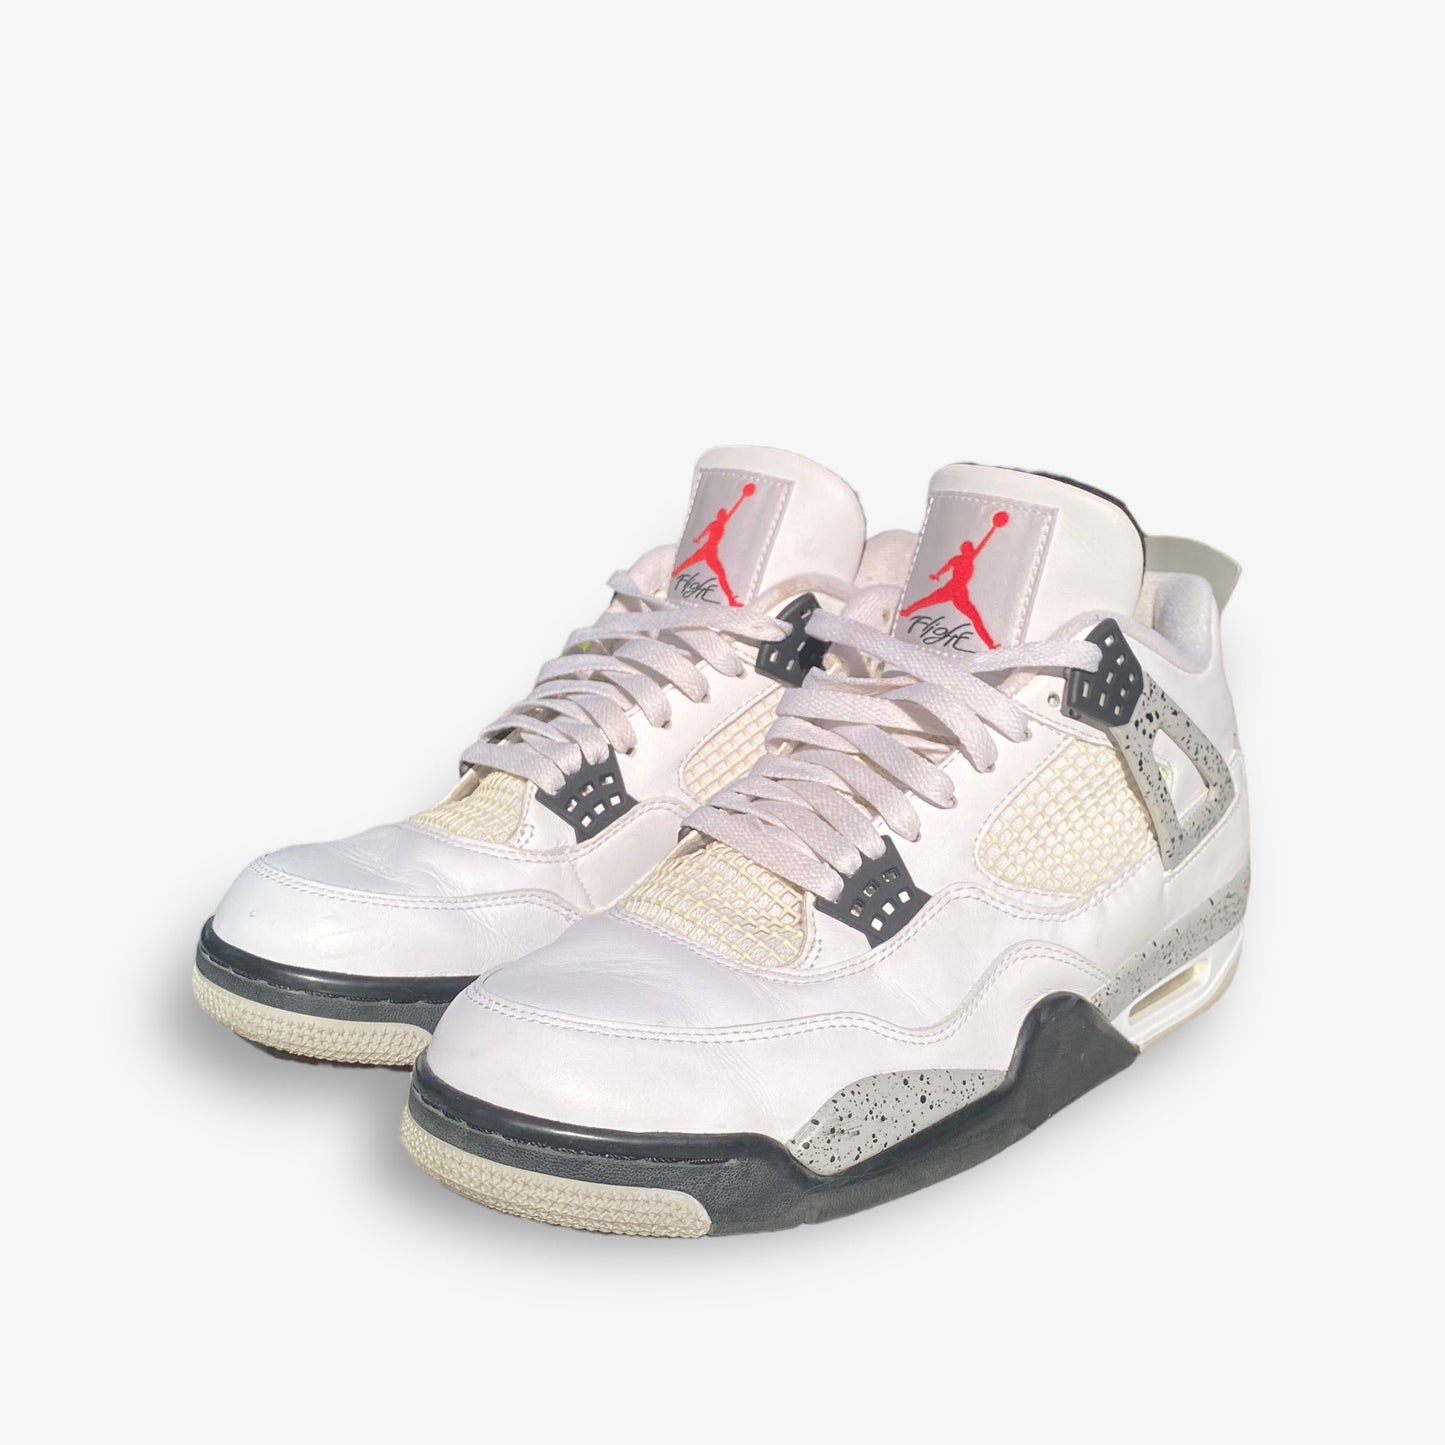 Air Jordan 4 “White Cement” (2016)